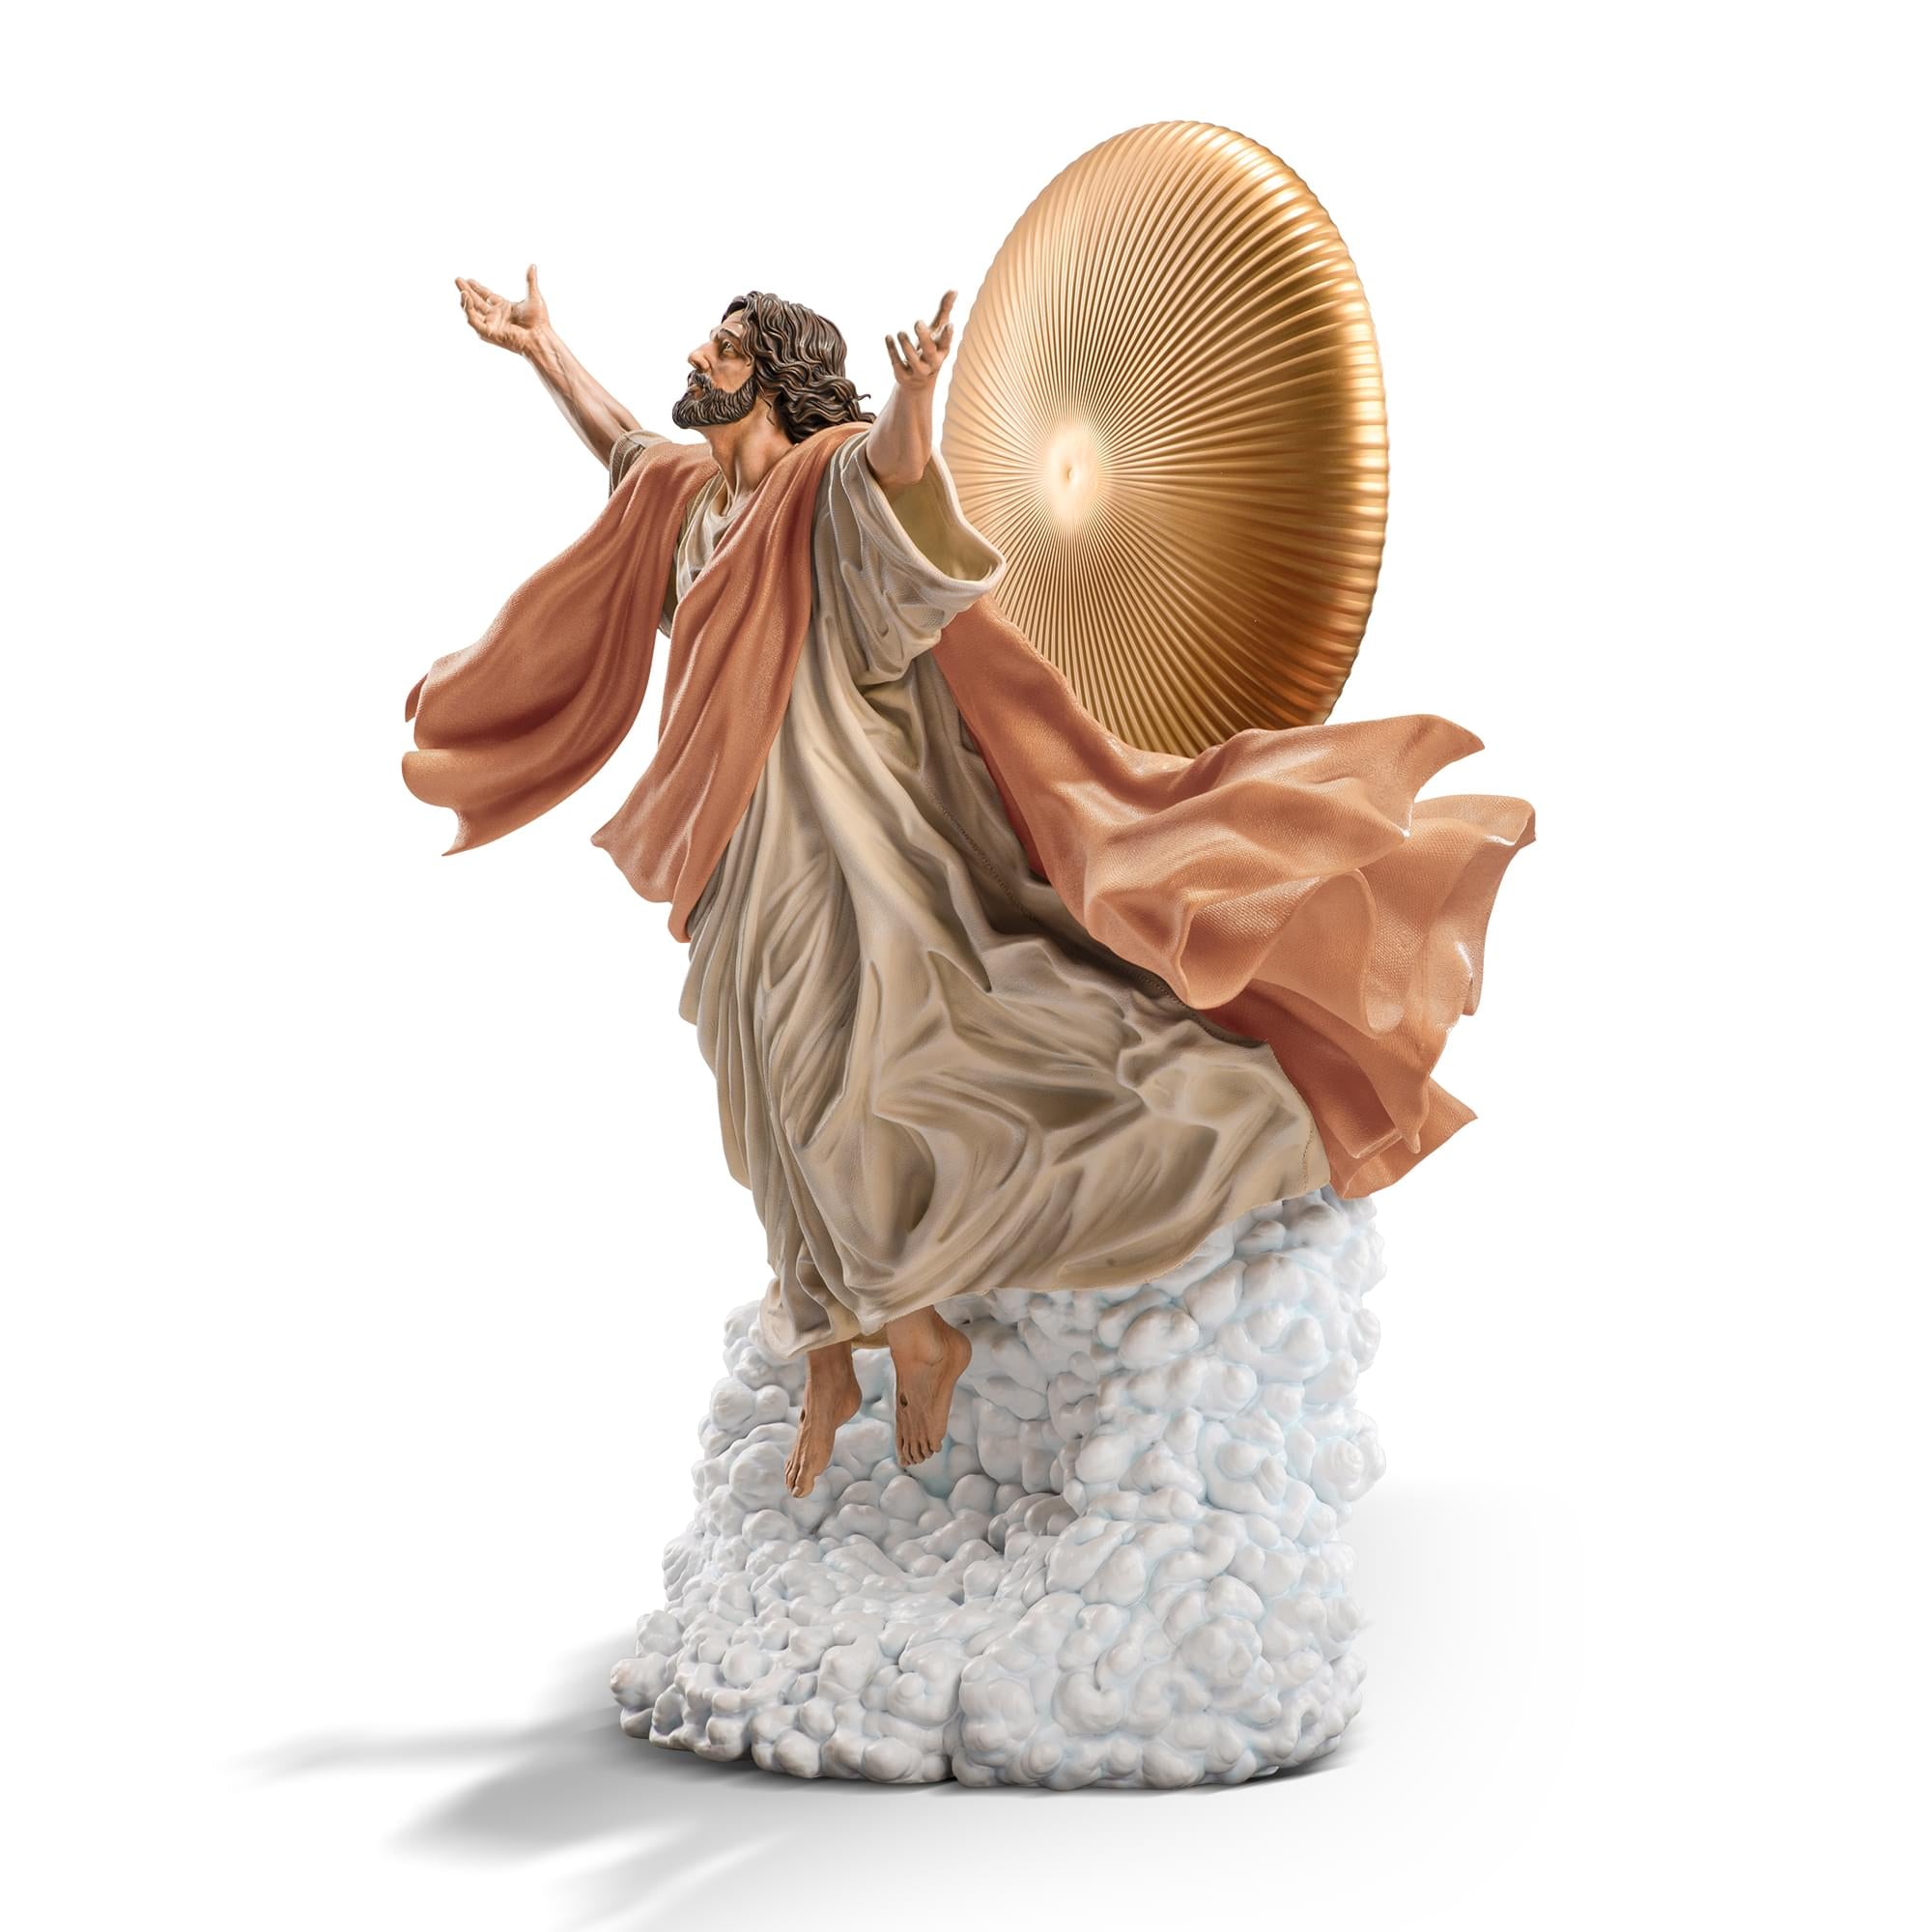 Ascension of Jesus Christ 11-Inch Premium Statue | 1:10 Scale Tan Robe Edition